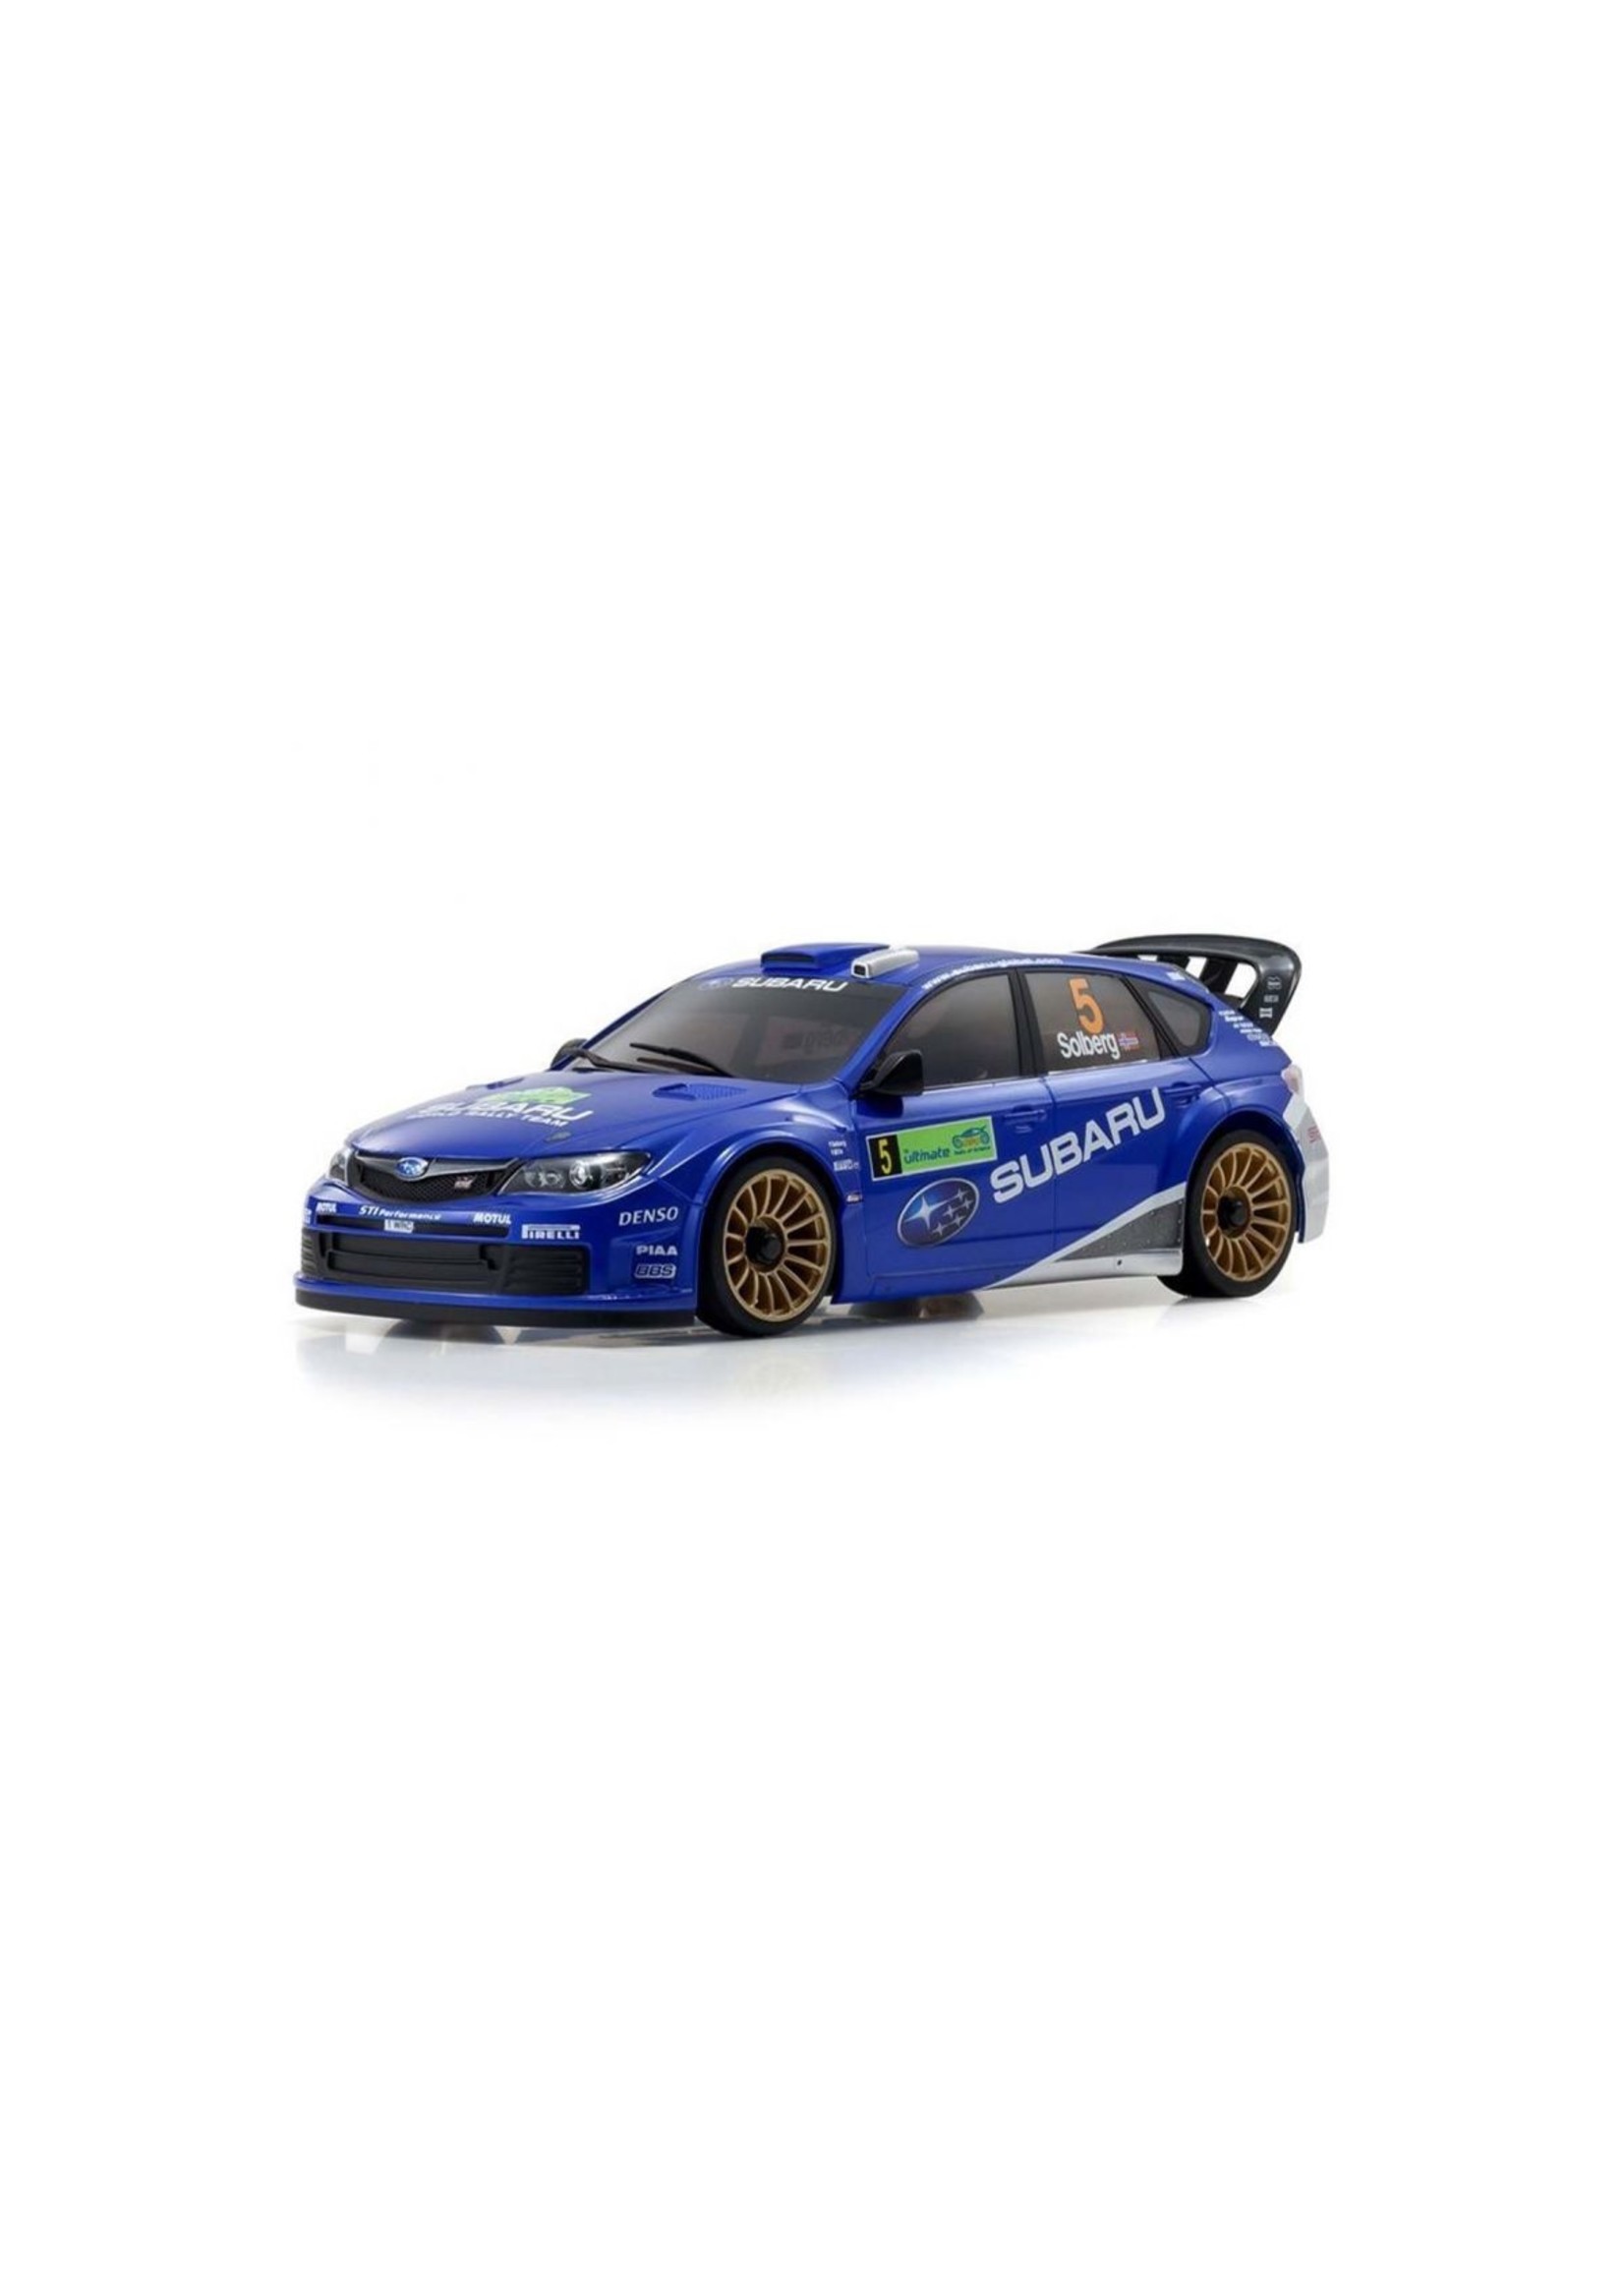 Kyosho MZP458WR - Subaru Impreza WRC - Autoscale Body